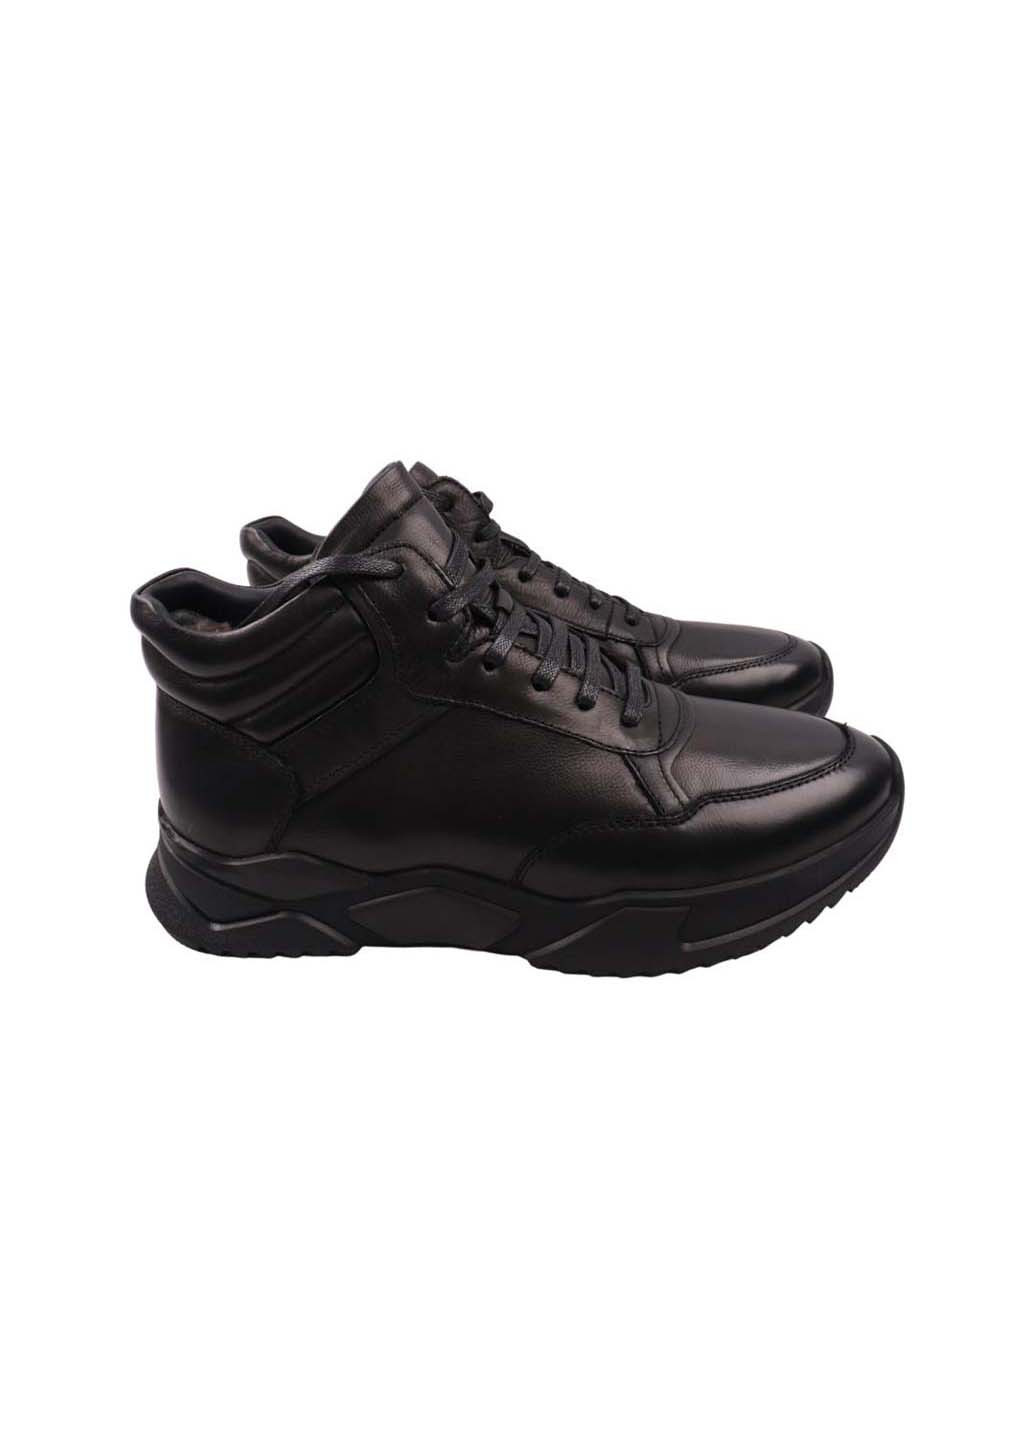 Черные осенние ботинки Clemento